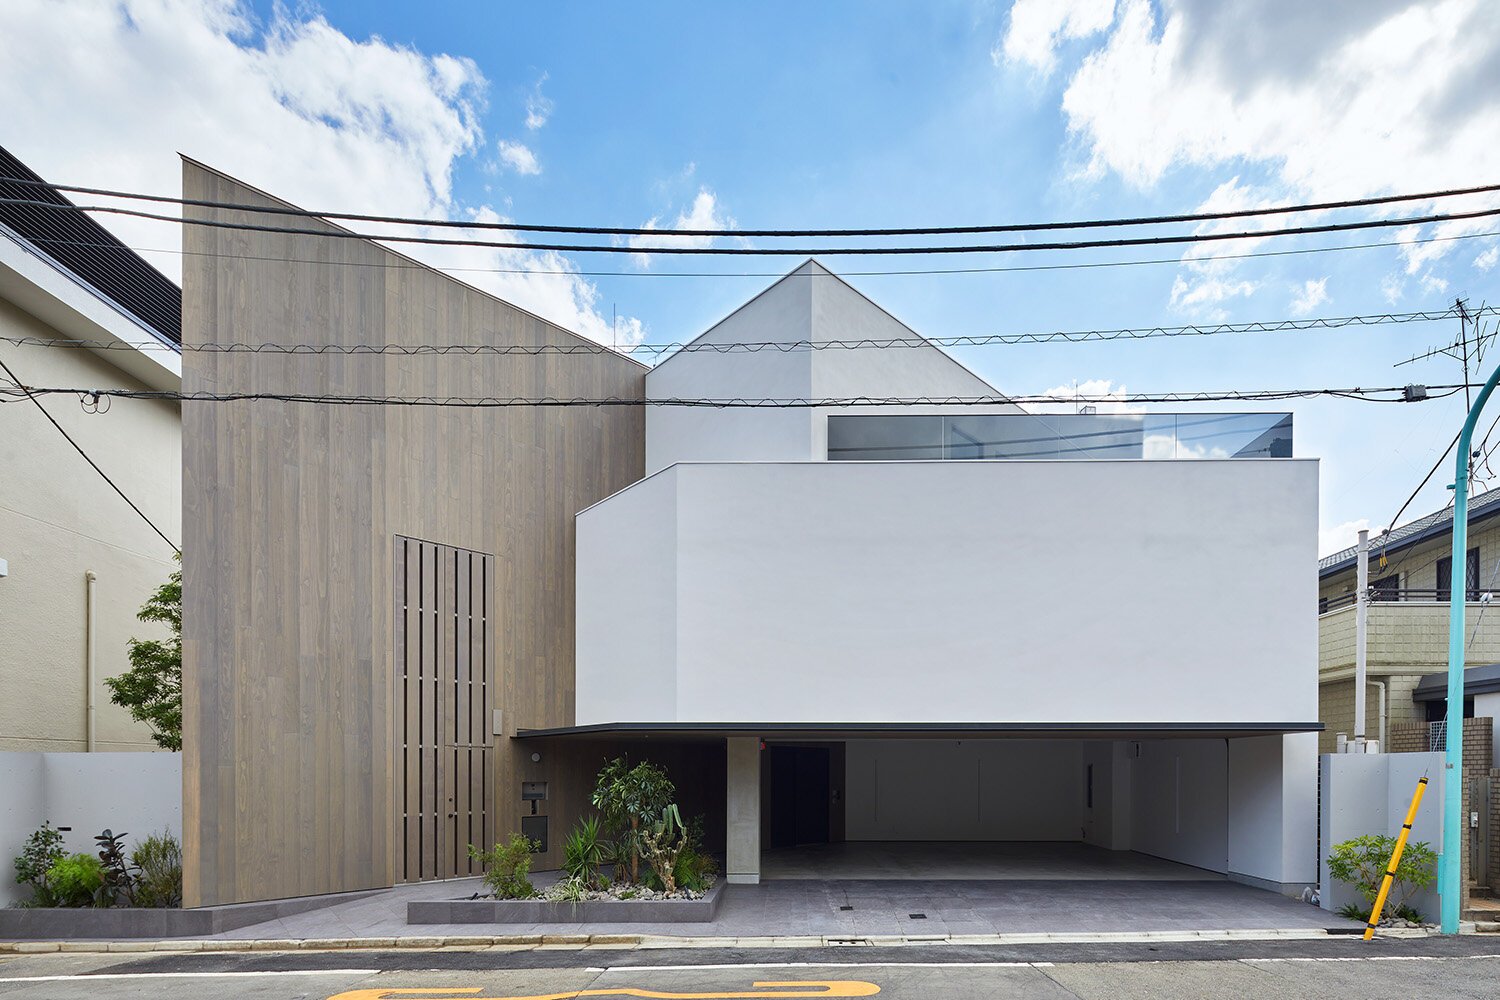  sinatoシナトの大野力が設計した住宅Shoto Sの外観デザイン。東京都渋谷区松濤に計画された。 